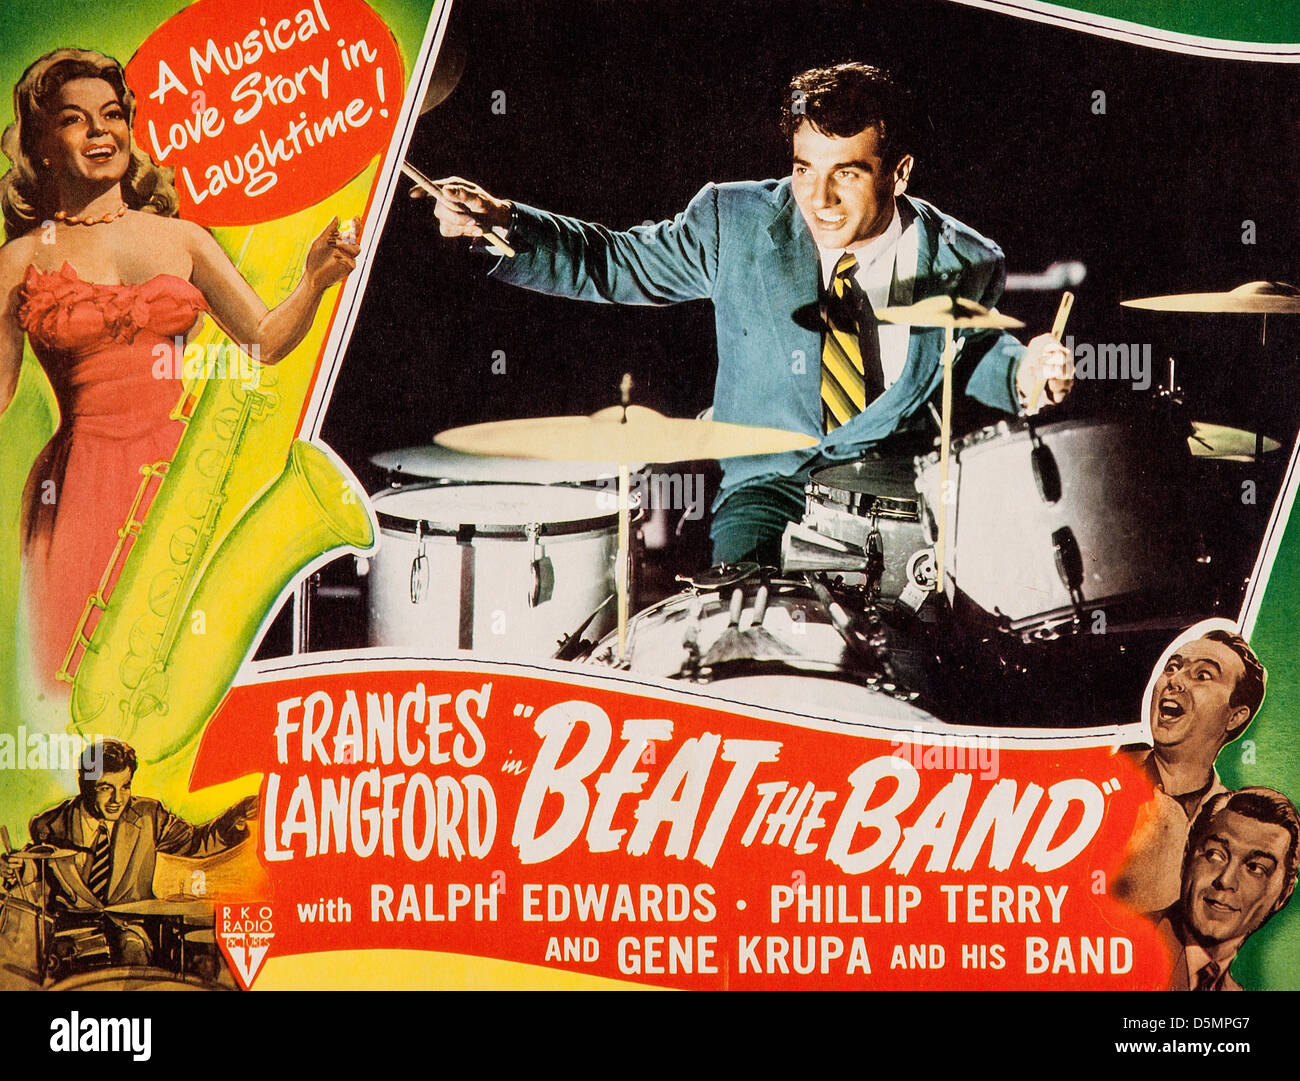 FRANCES LANGFORD, Gene Krupa POSTER, battre la bande, 1947 Banque D'Images